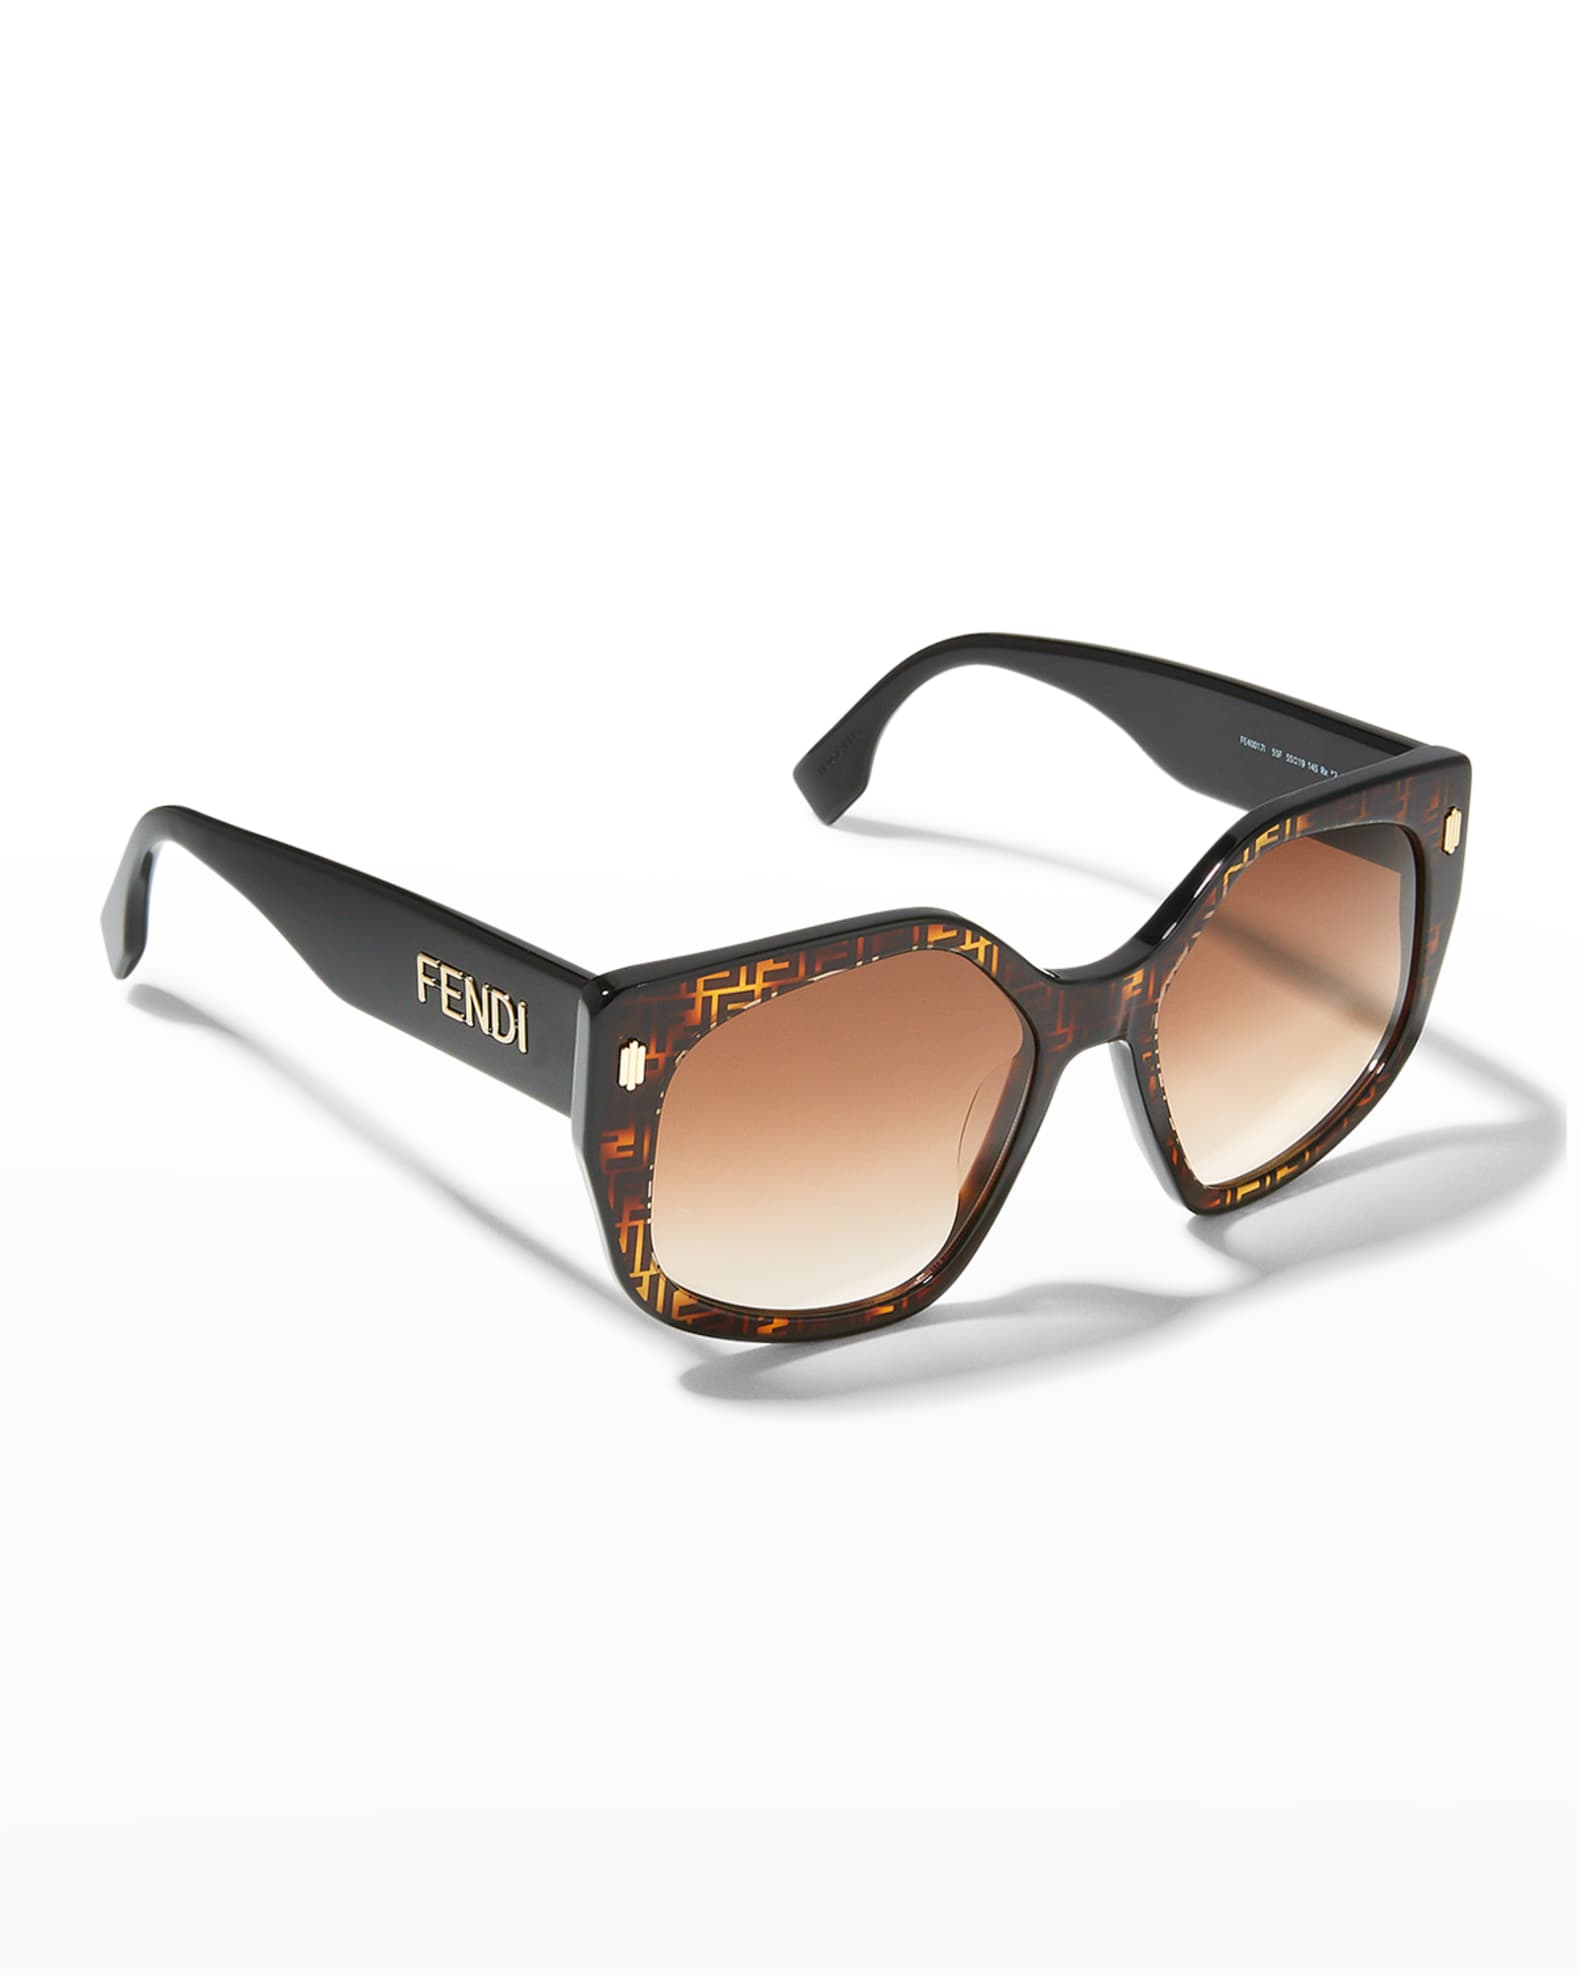 Fendi Geometric Square Acetate Sunglasses Neiman Marcus